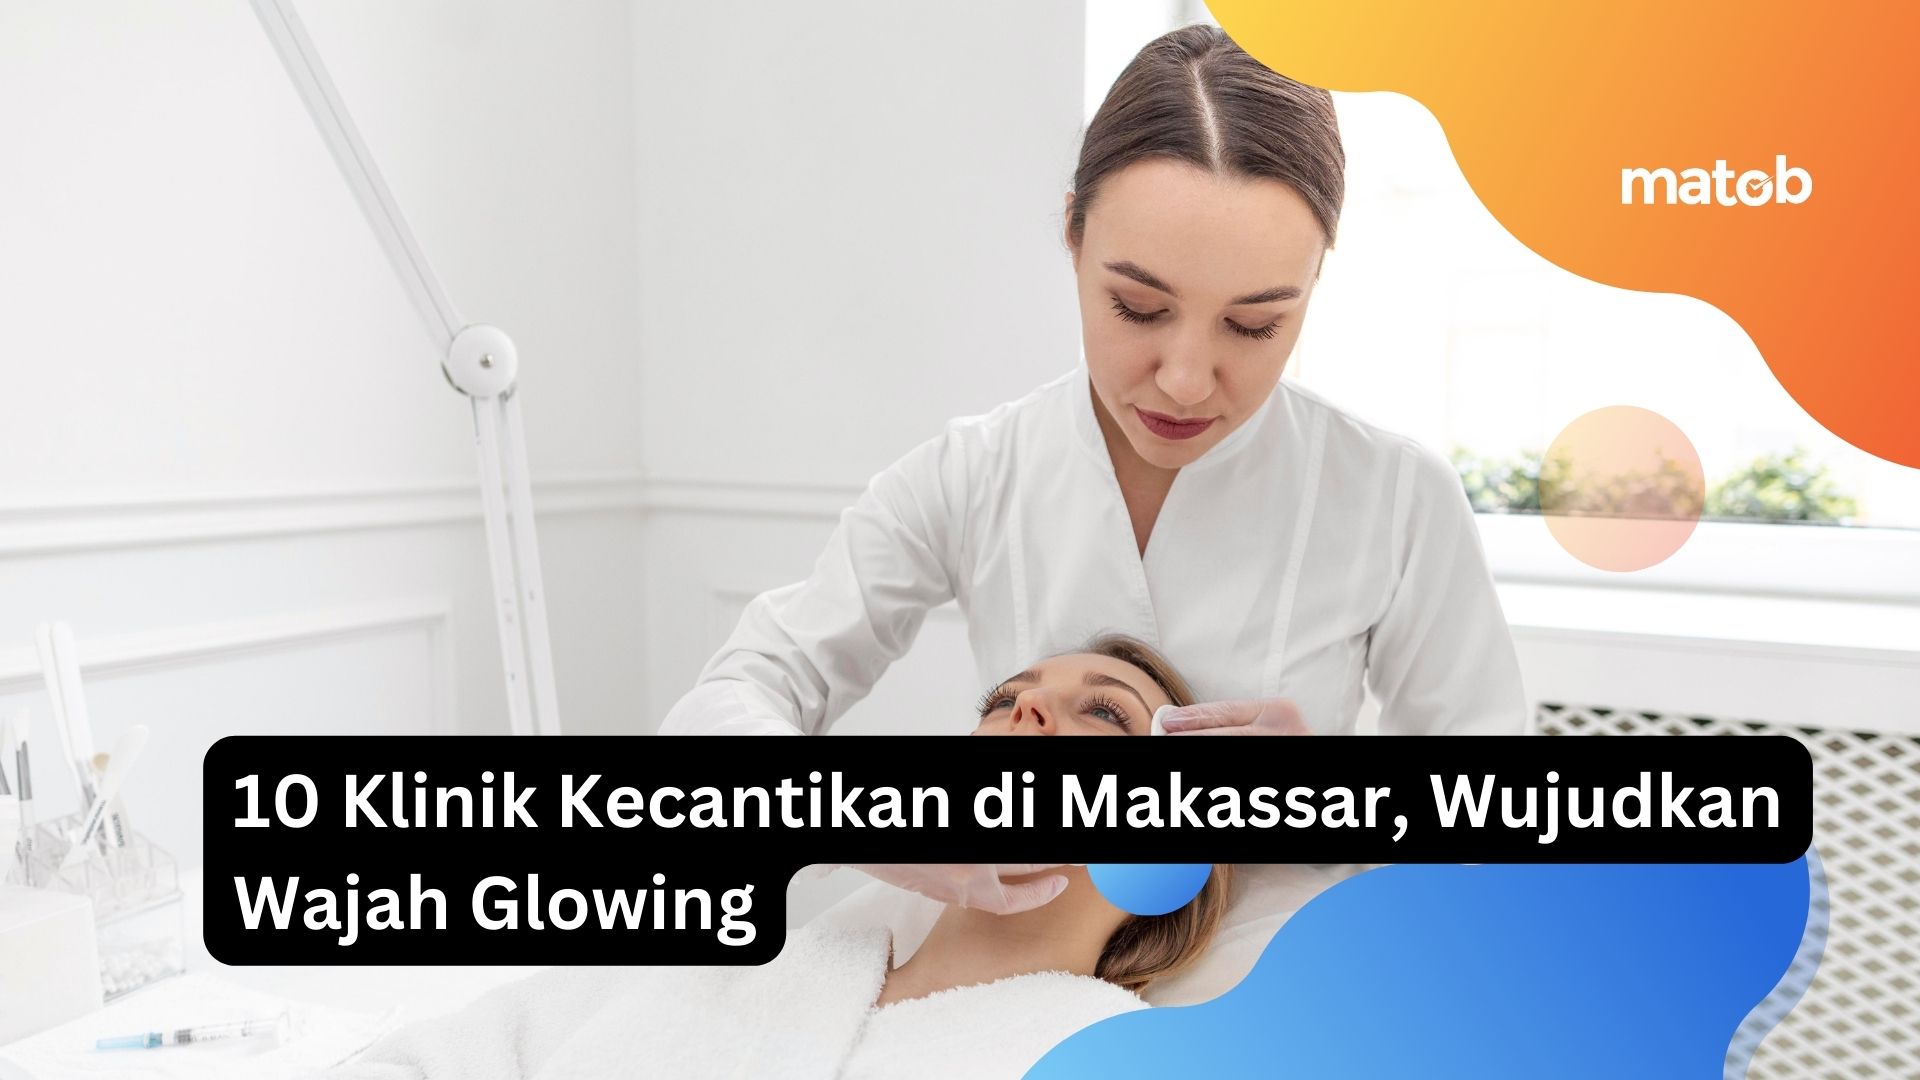 10 Klinik Kecantikan di Makassar, Wujudkan Wajah Glowing